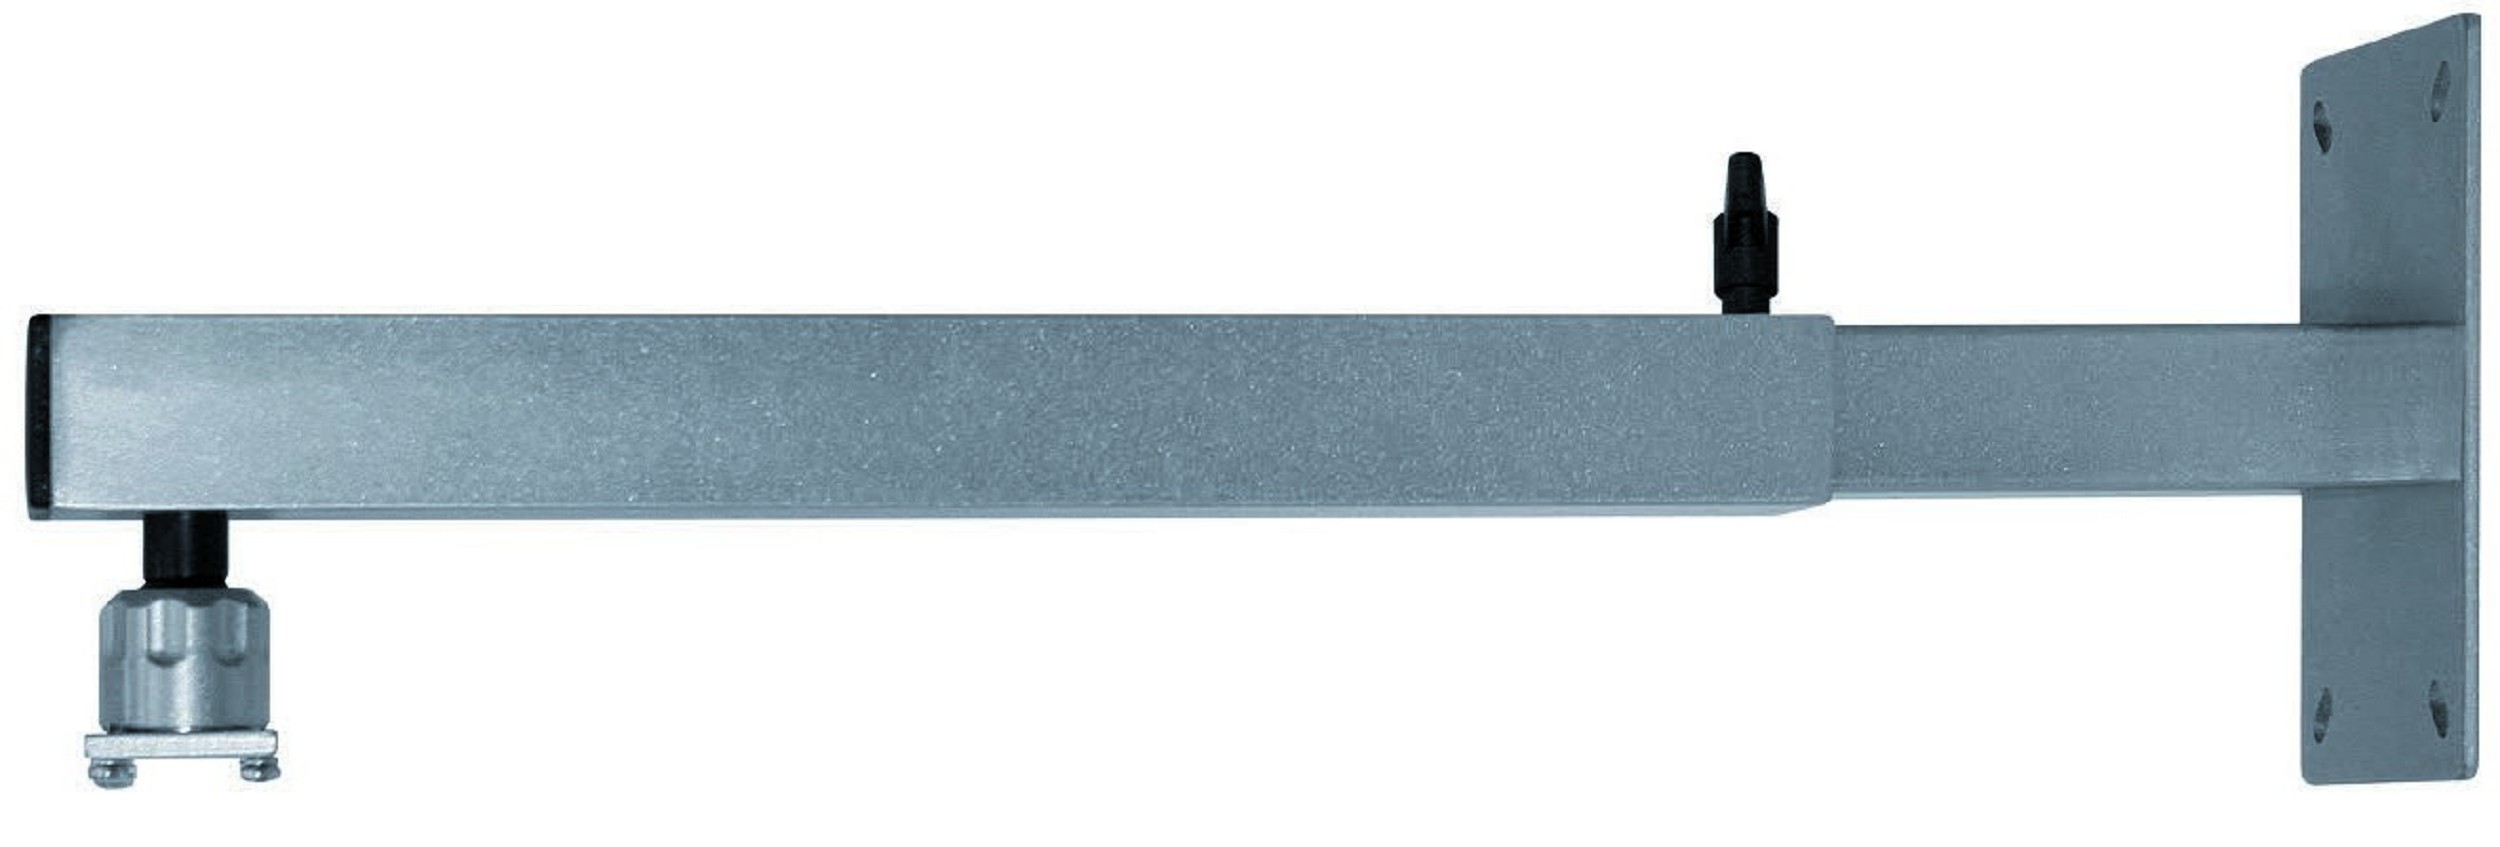 Wall mount standard, 40 - 70 cm, HK